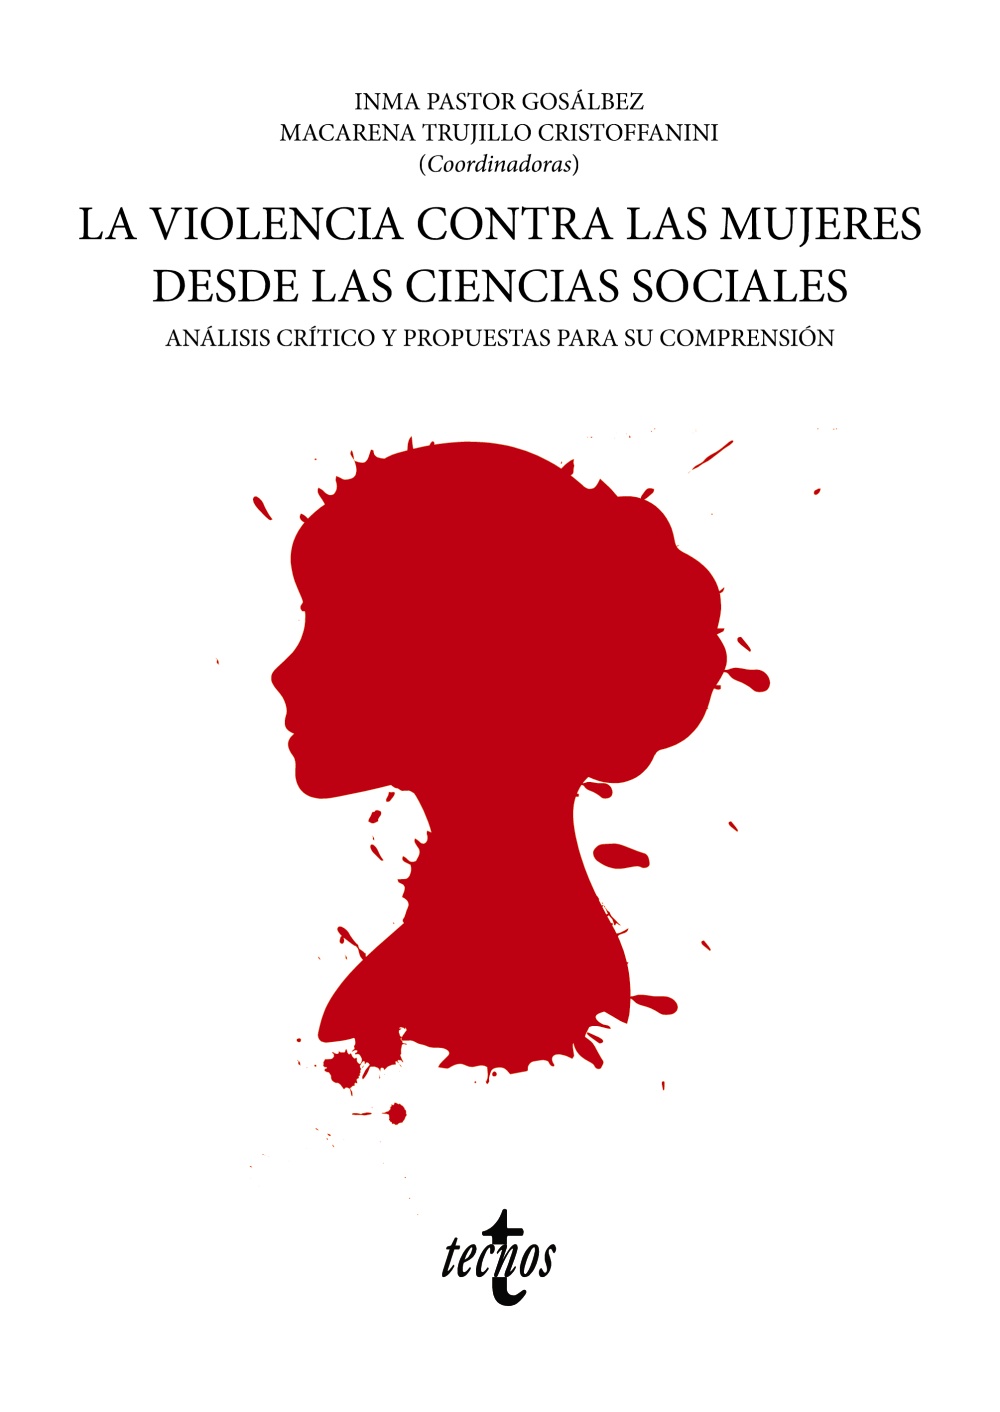 La violencia contra las mujeres desde las ciencias sociales